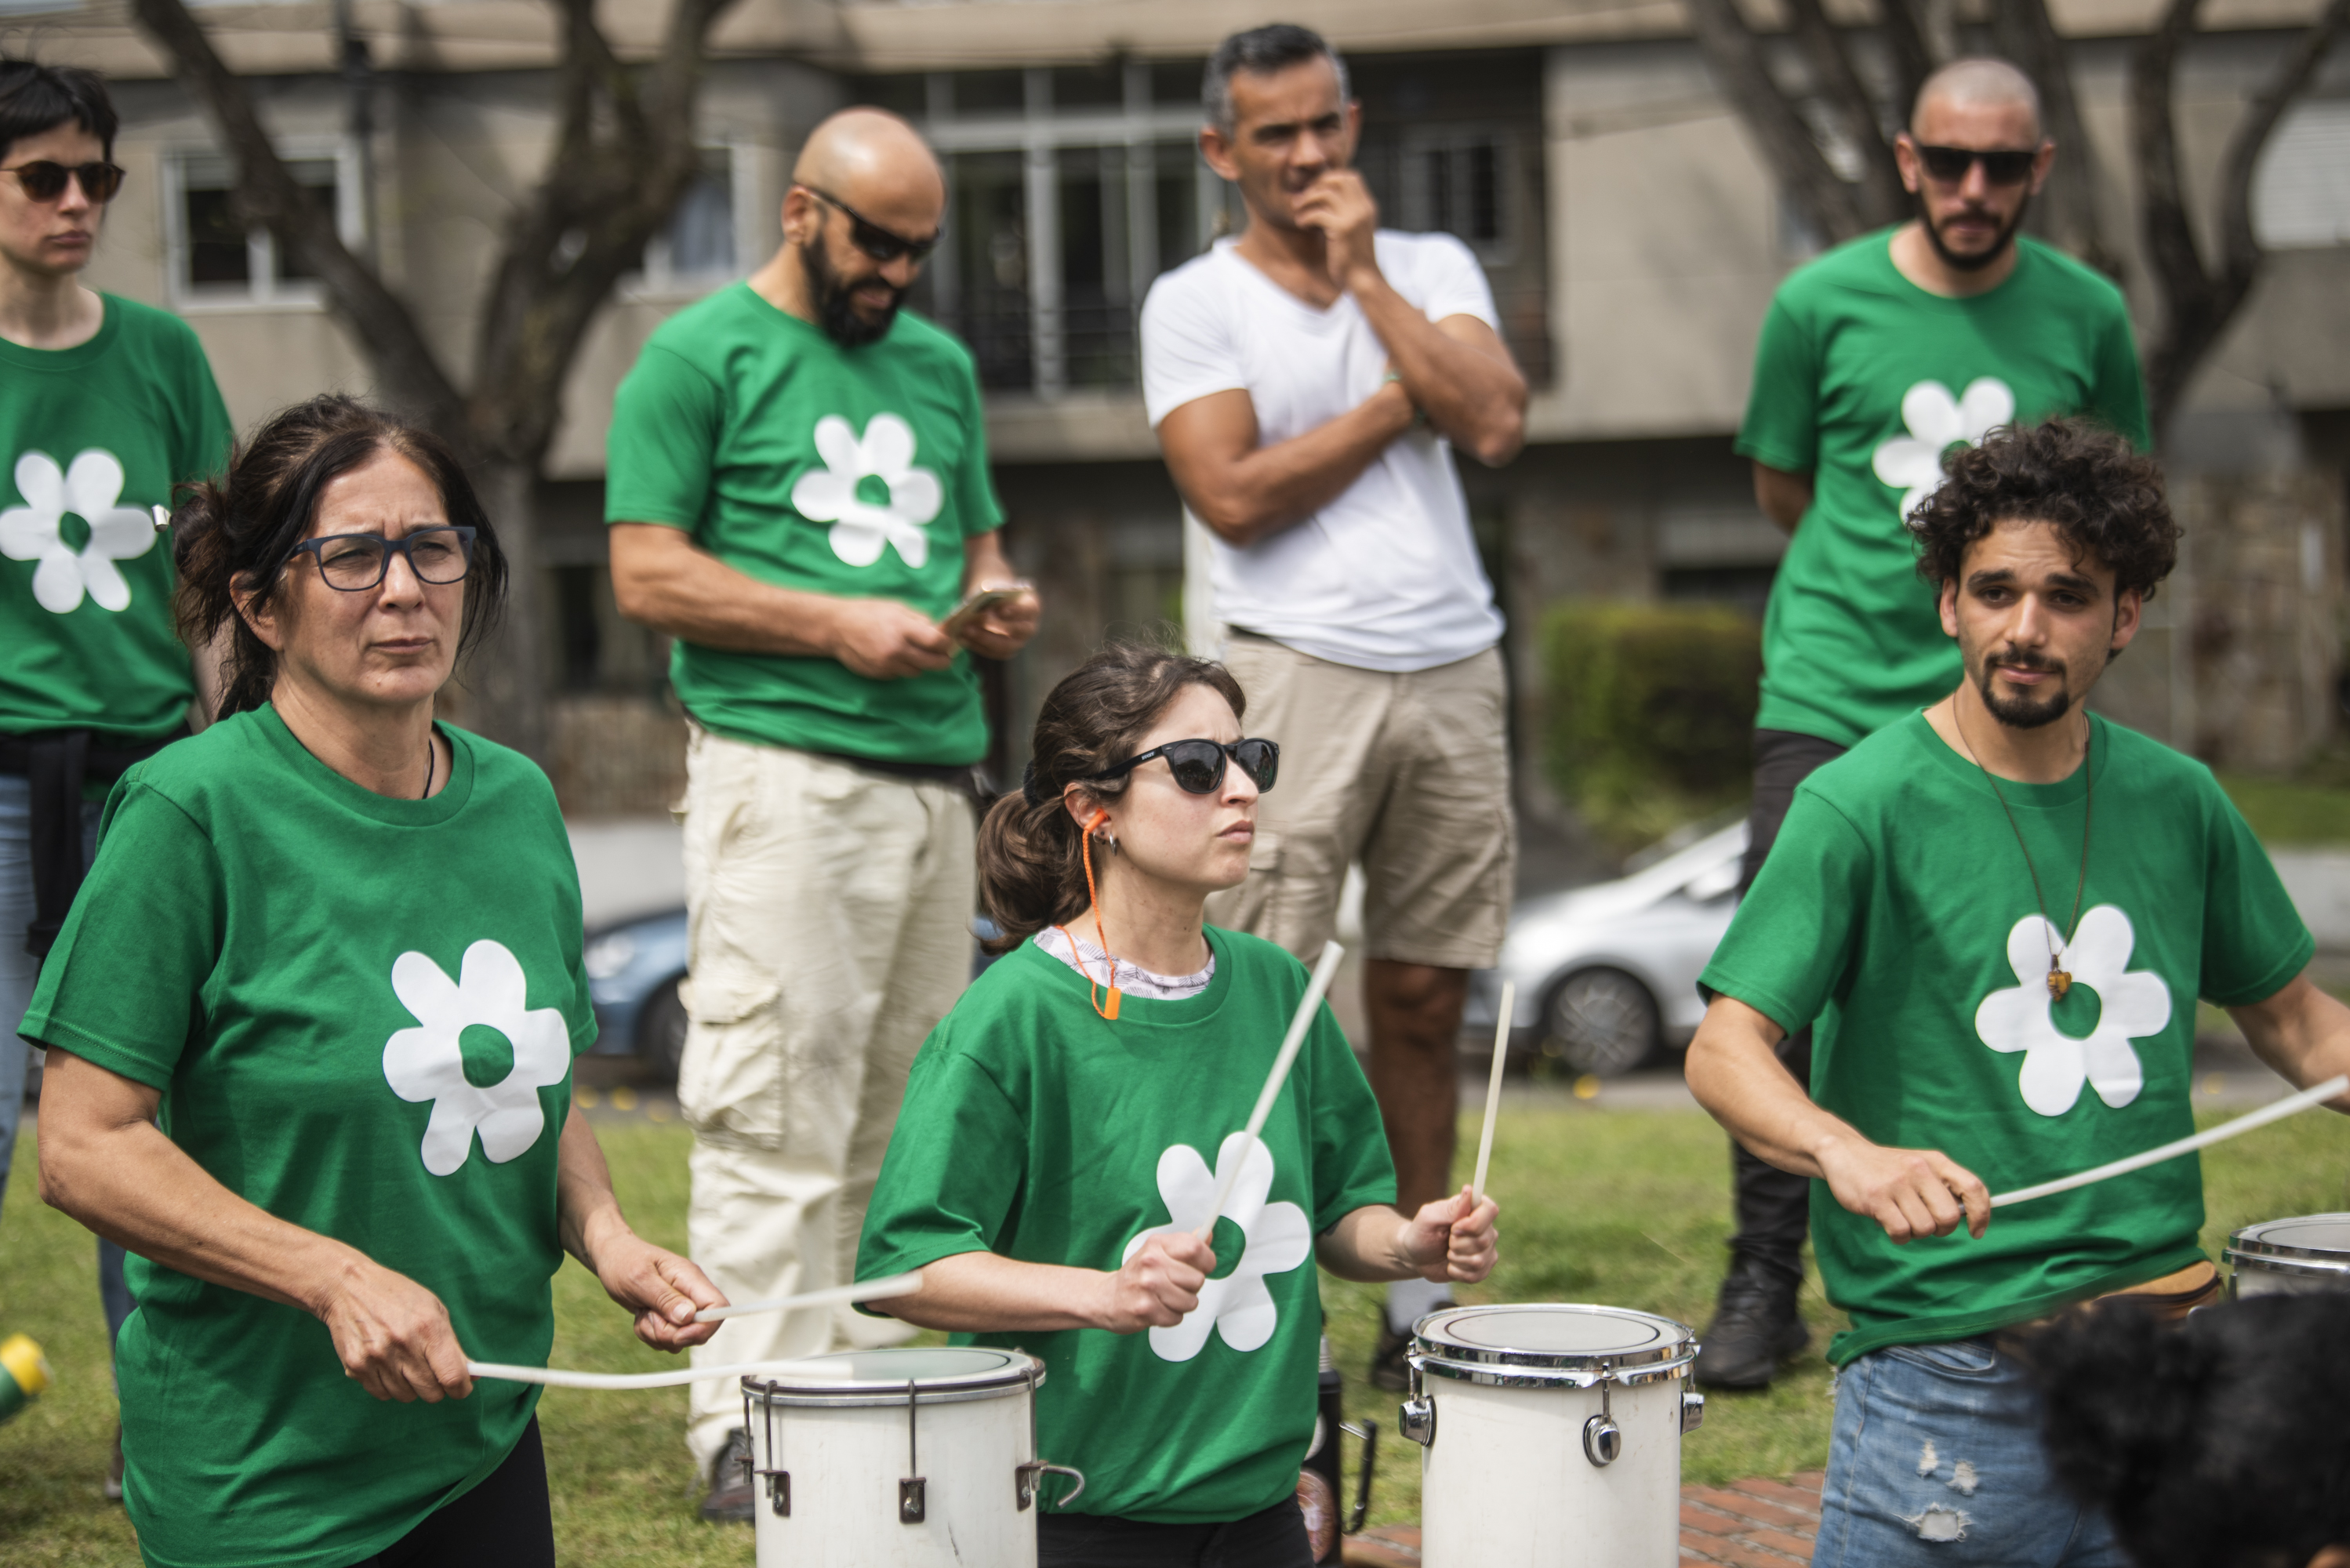 Taller de percusión con Nicolás Arnicho en la plaza Fabini por el Día de las Plazas